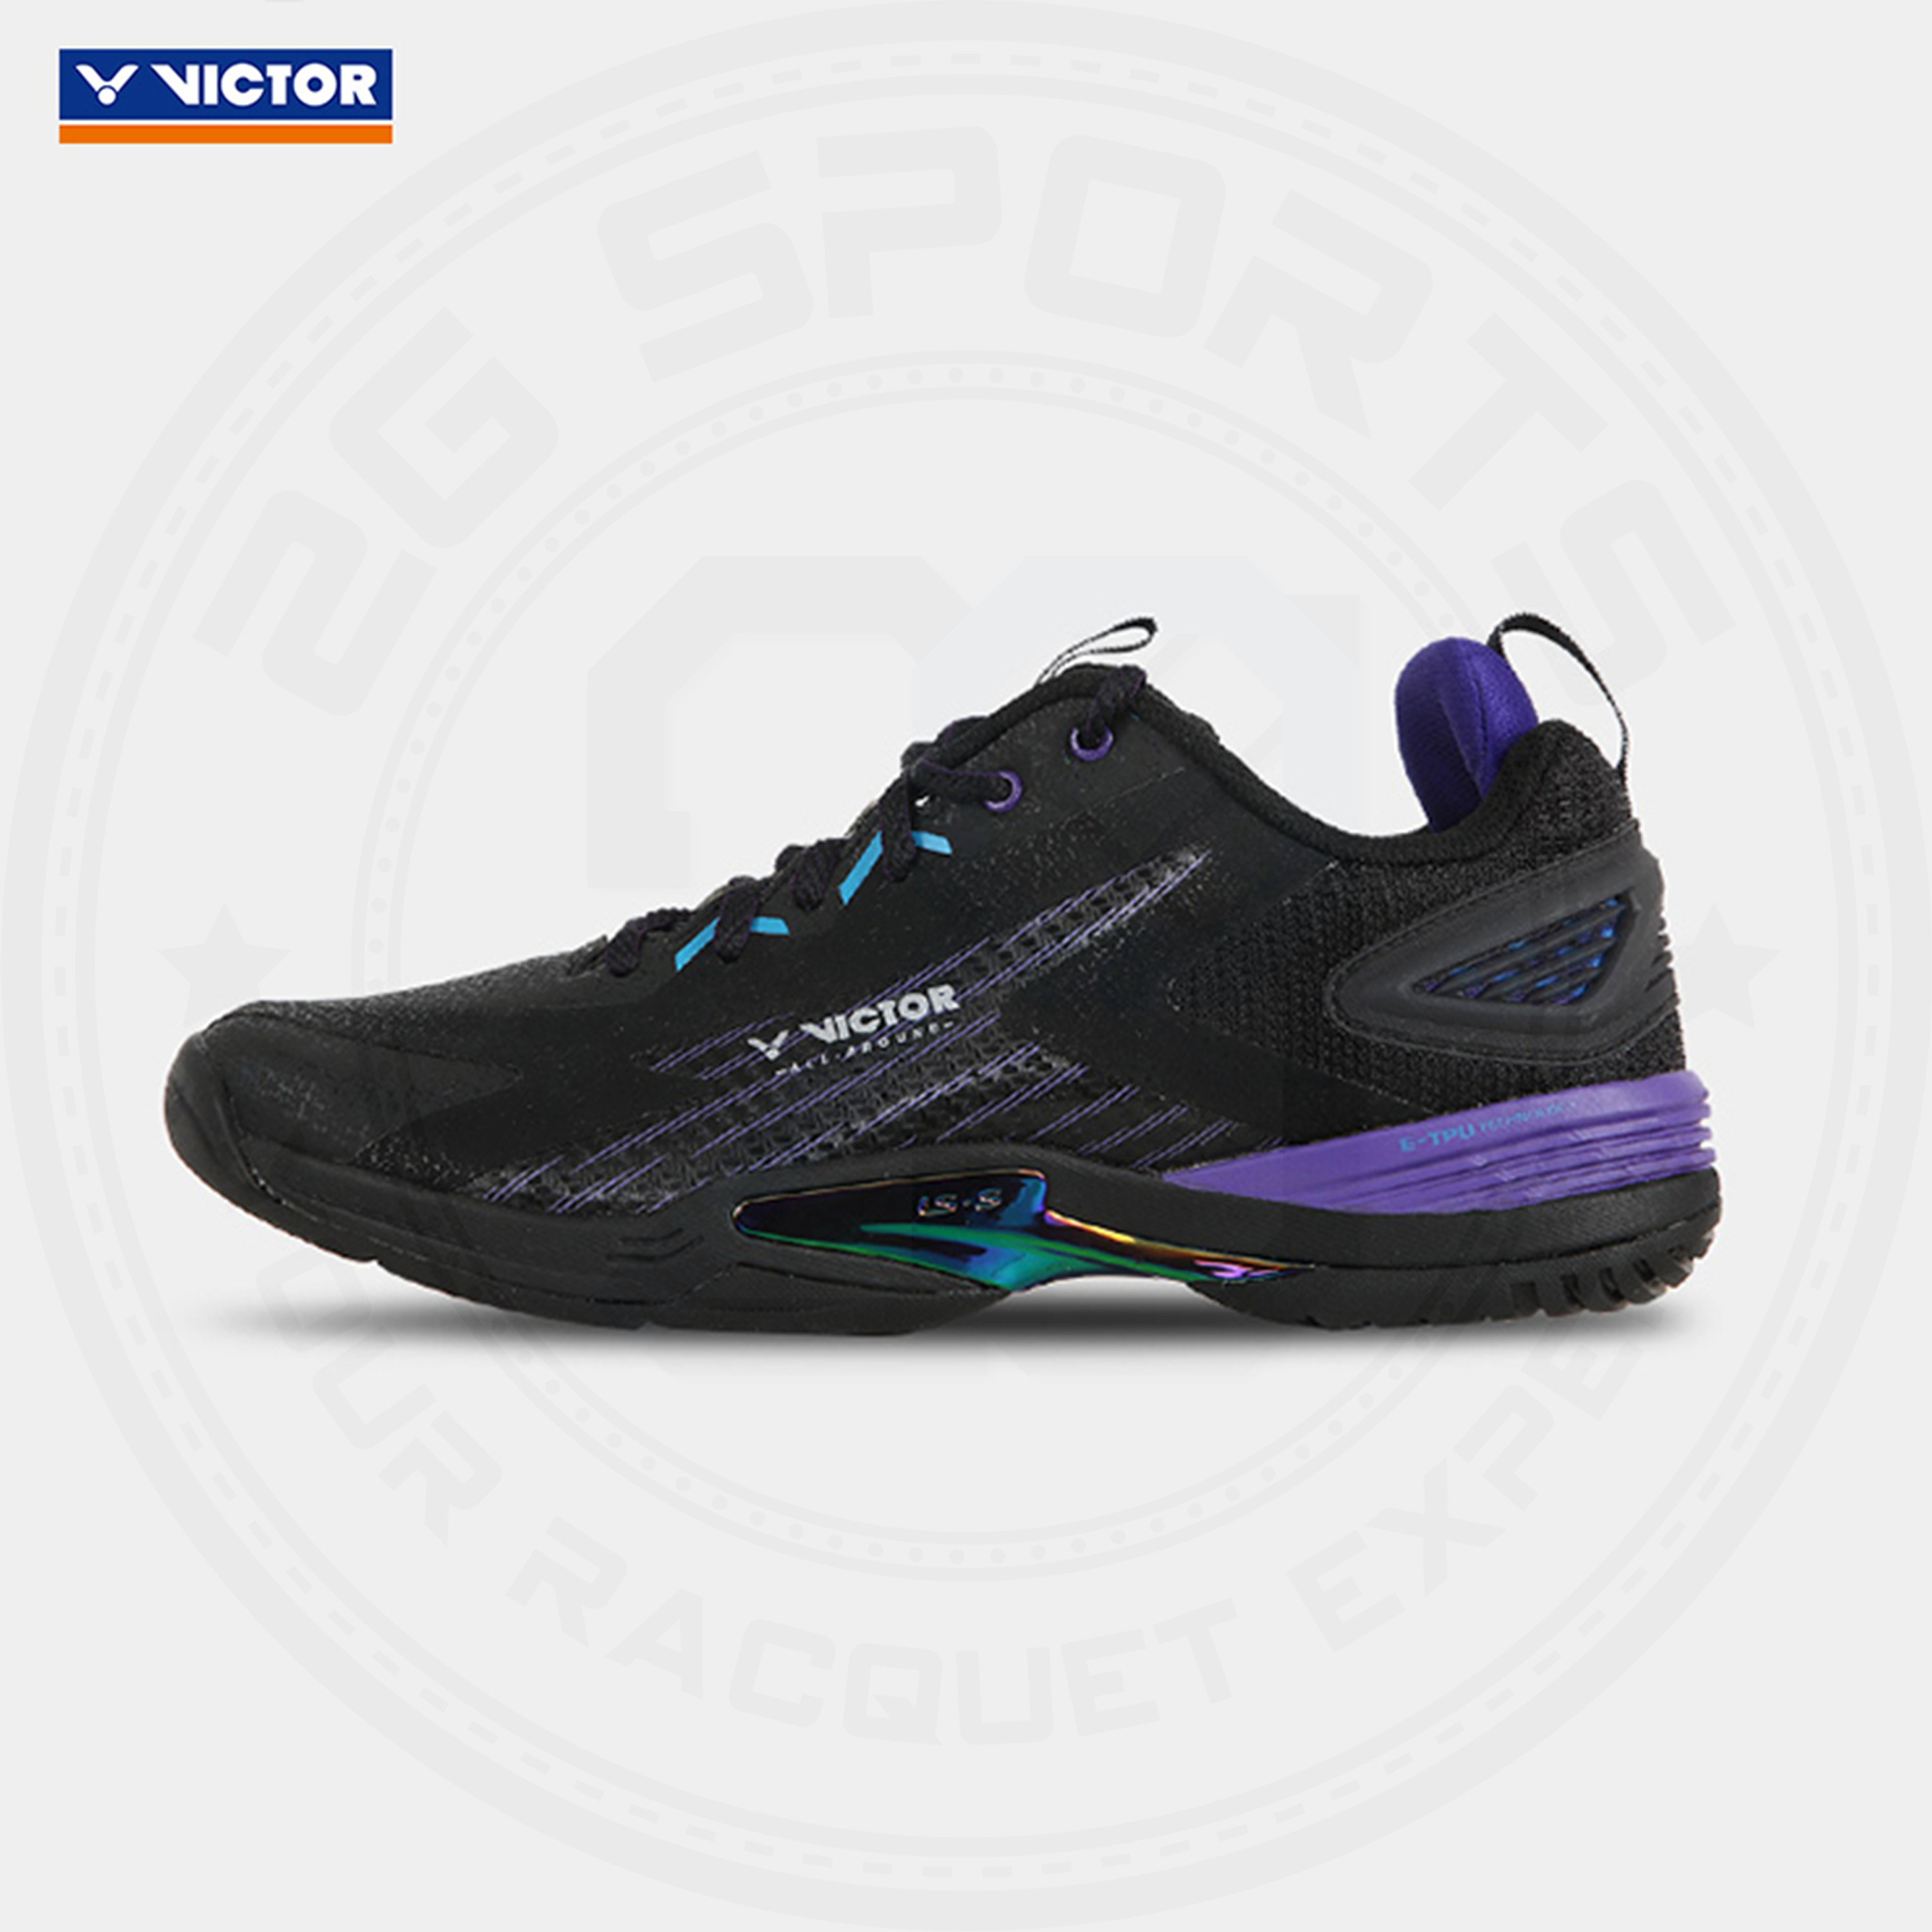 Victor X LZJ A970ACE Badminton Shoes Black/ Purple MEN'S